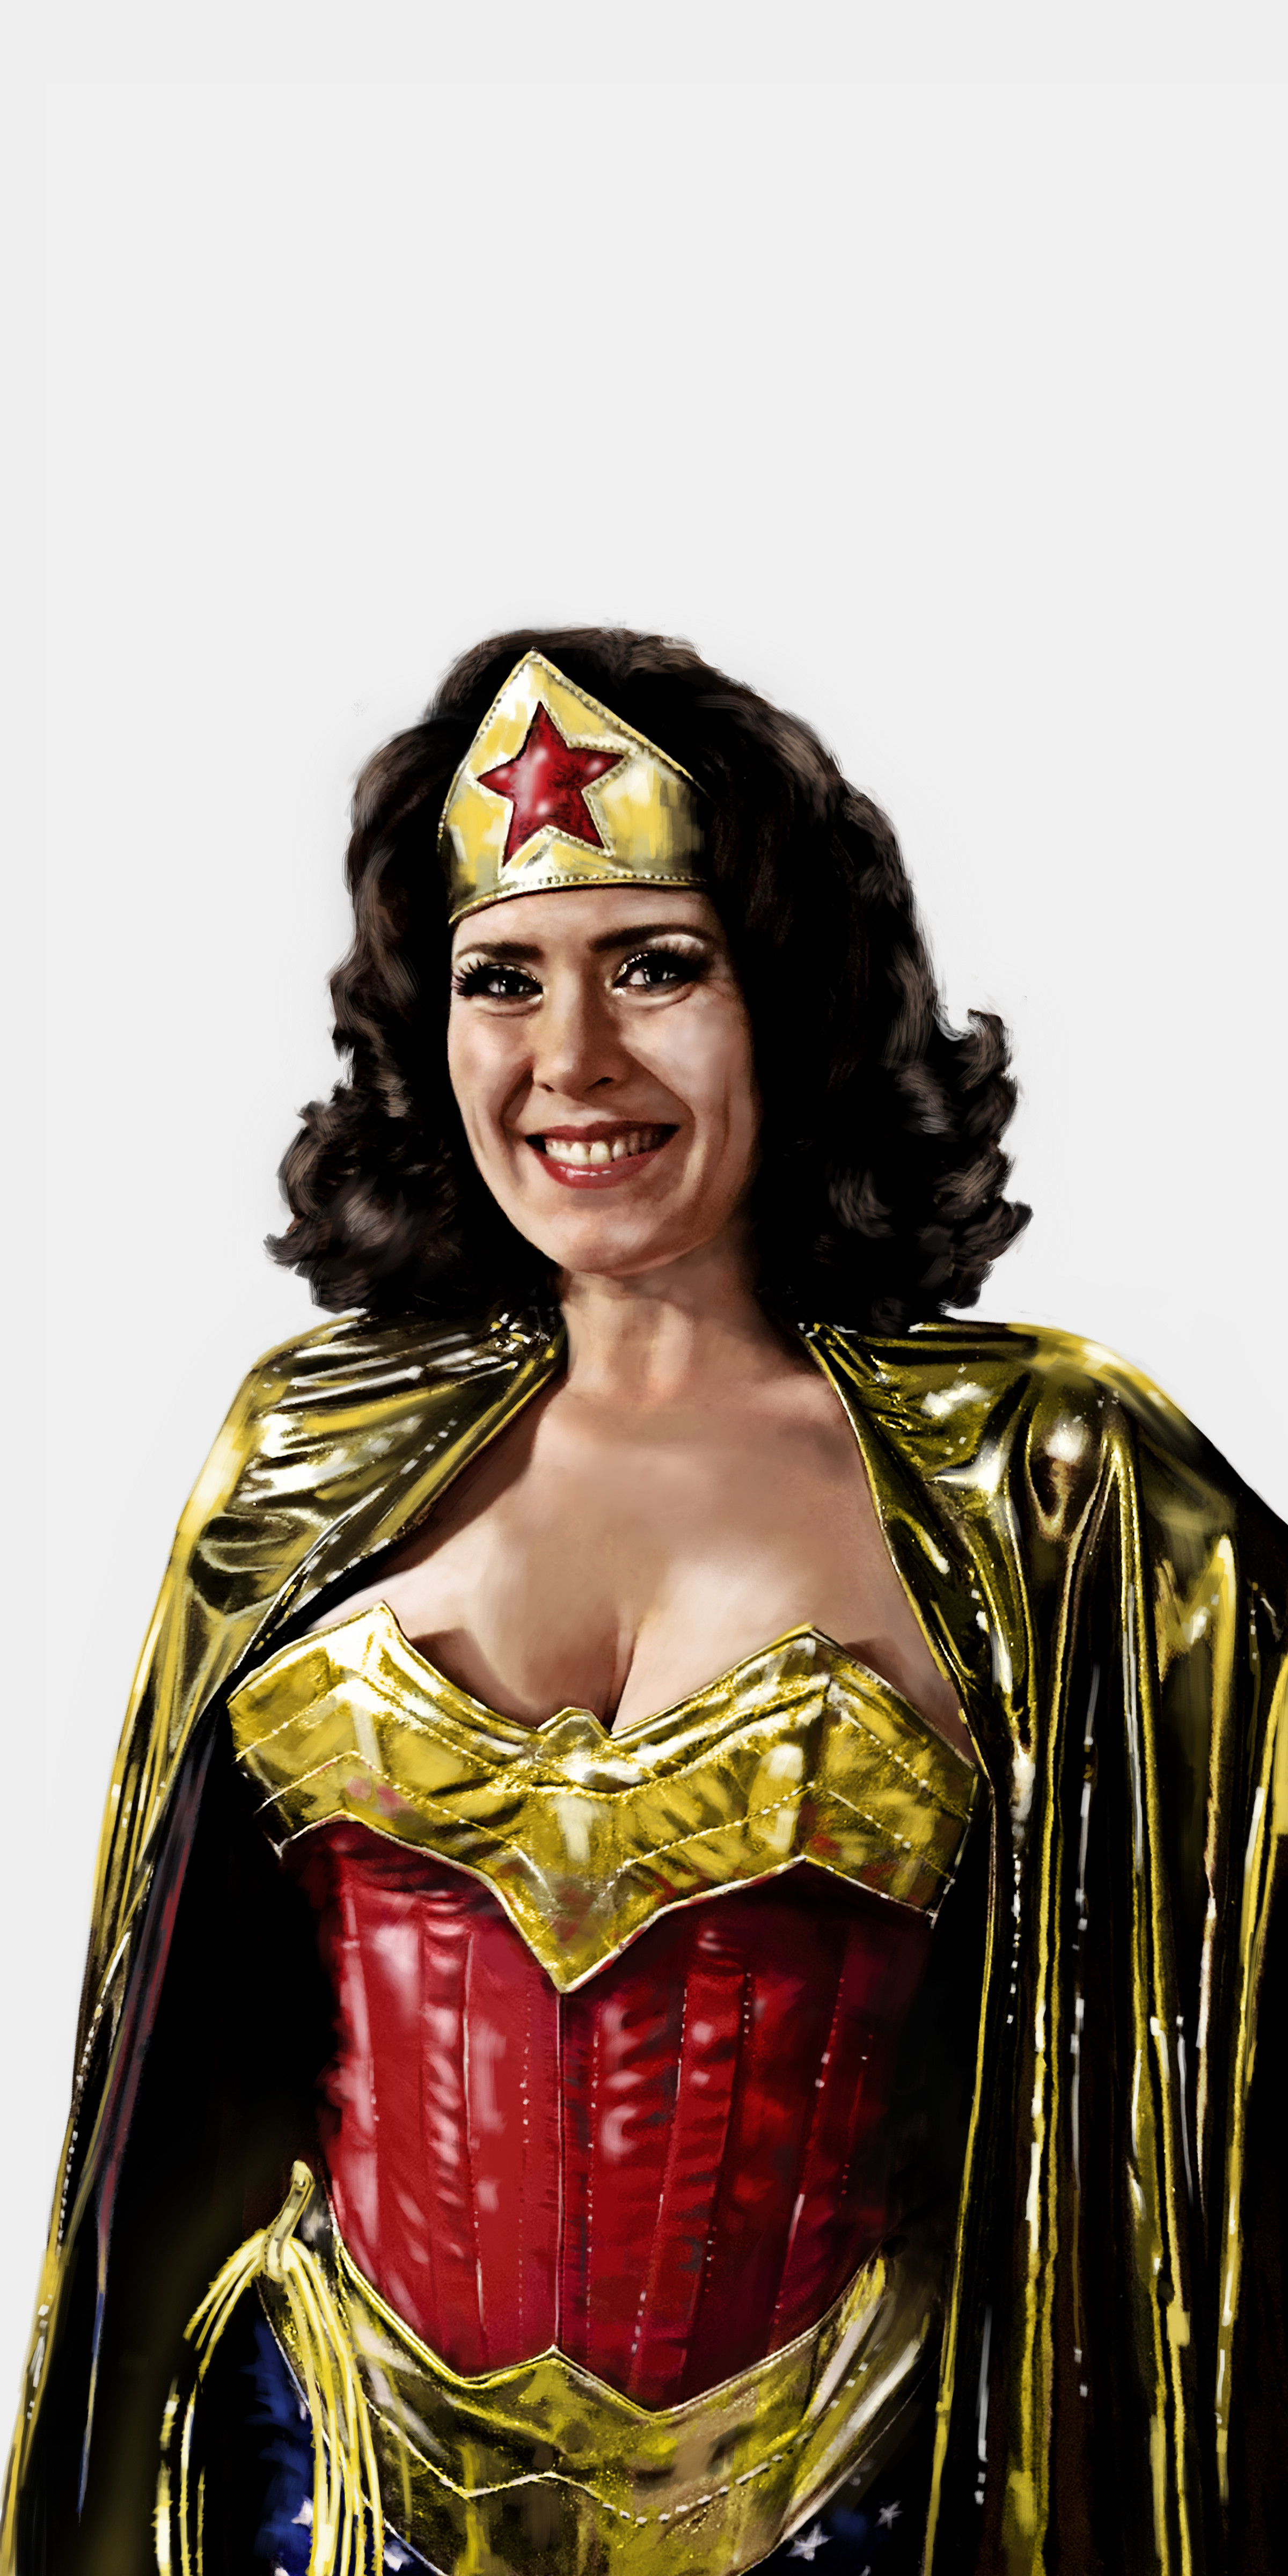 Wonder Woman portrait 1
Digital portrait